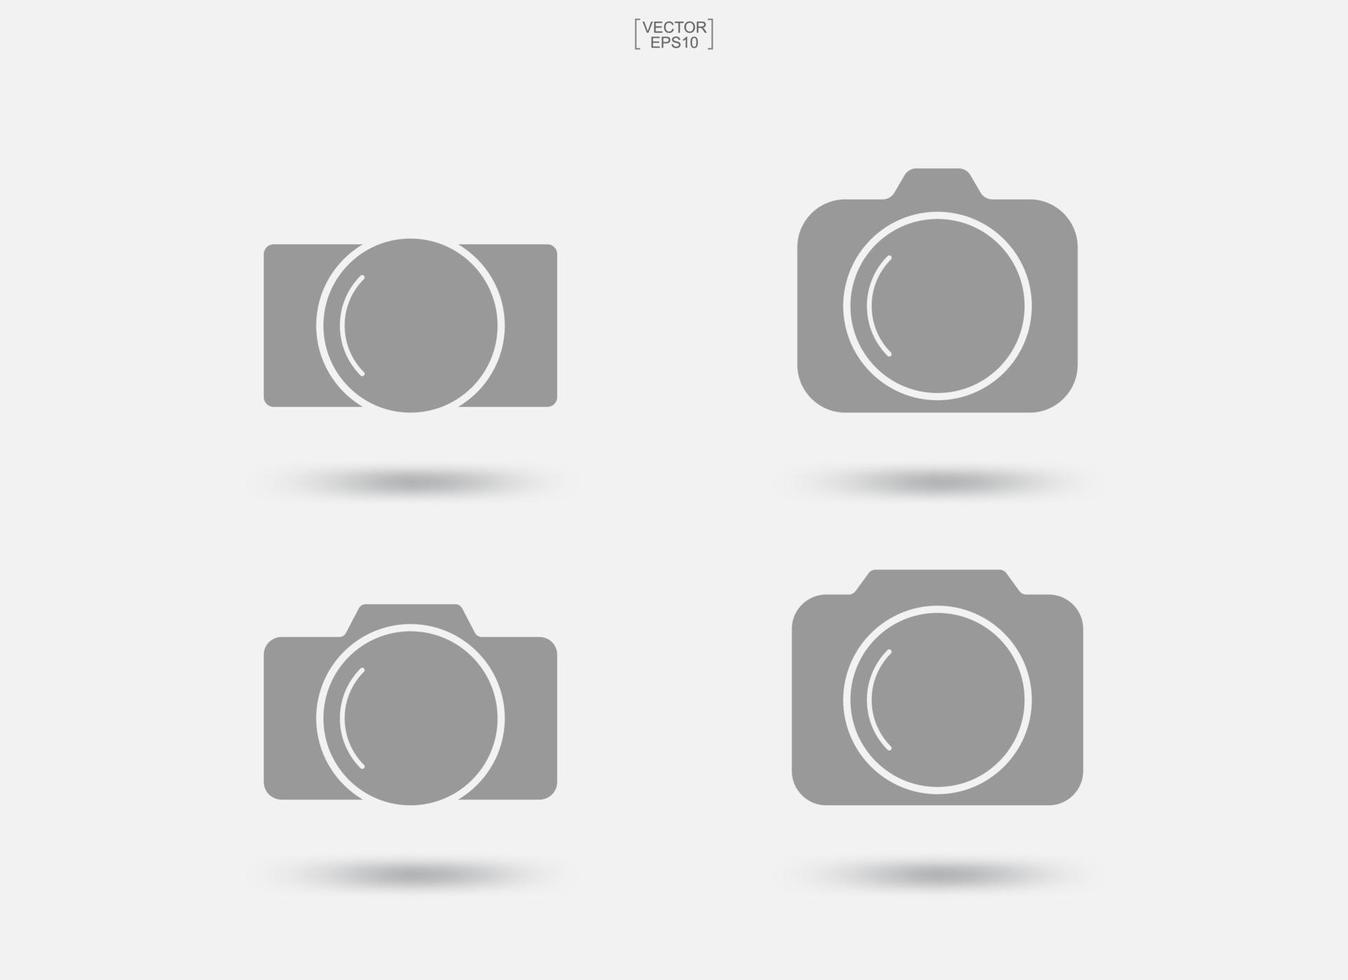 Kamerazeichen und -symbol. Fotosymbol oder Bildsymbol. Vektor. vektor